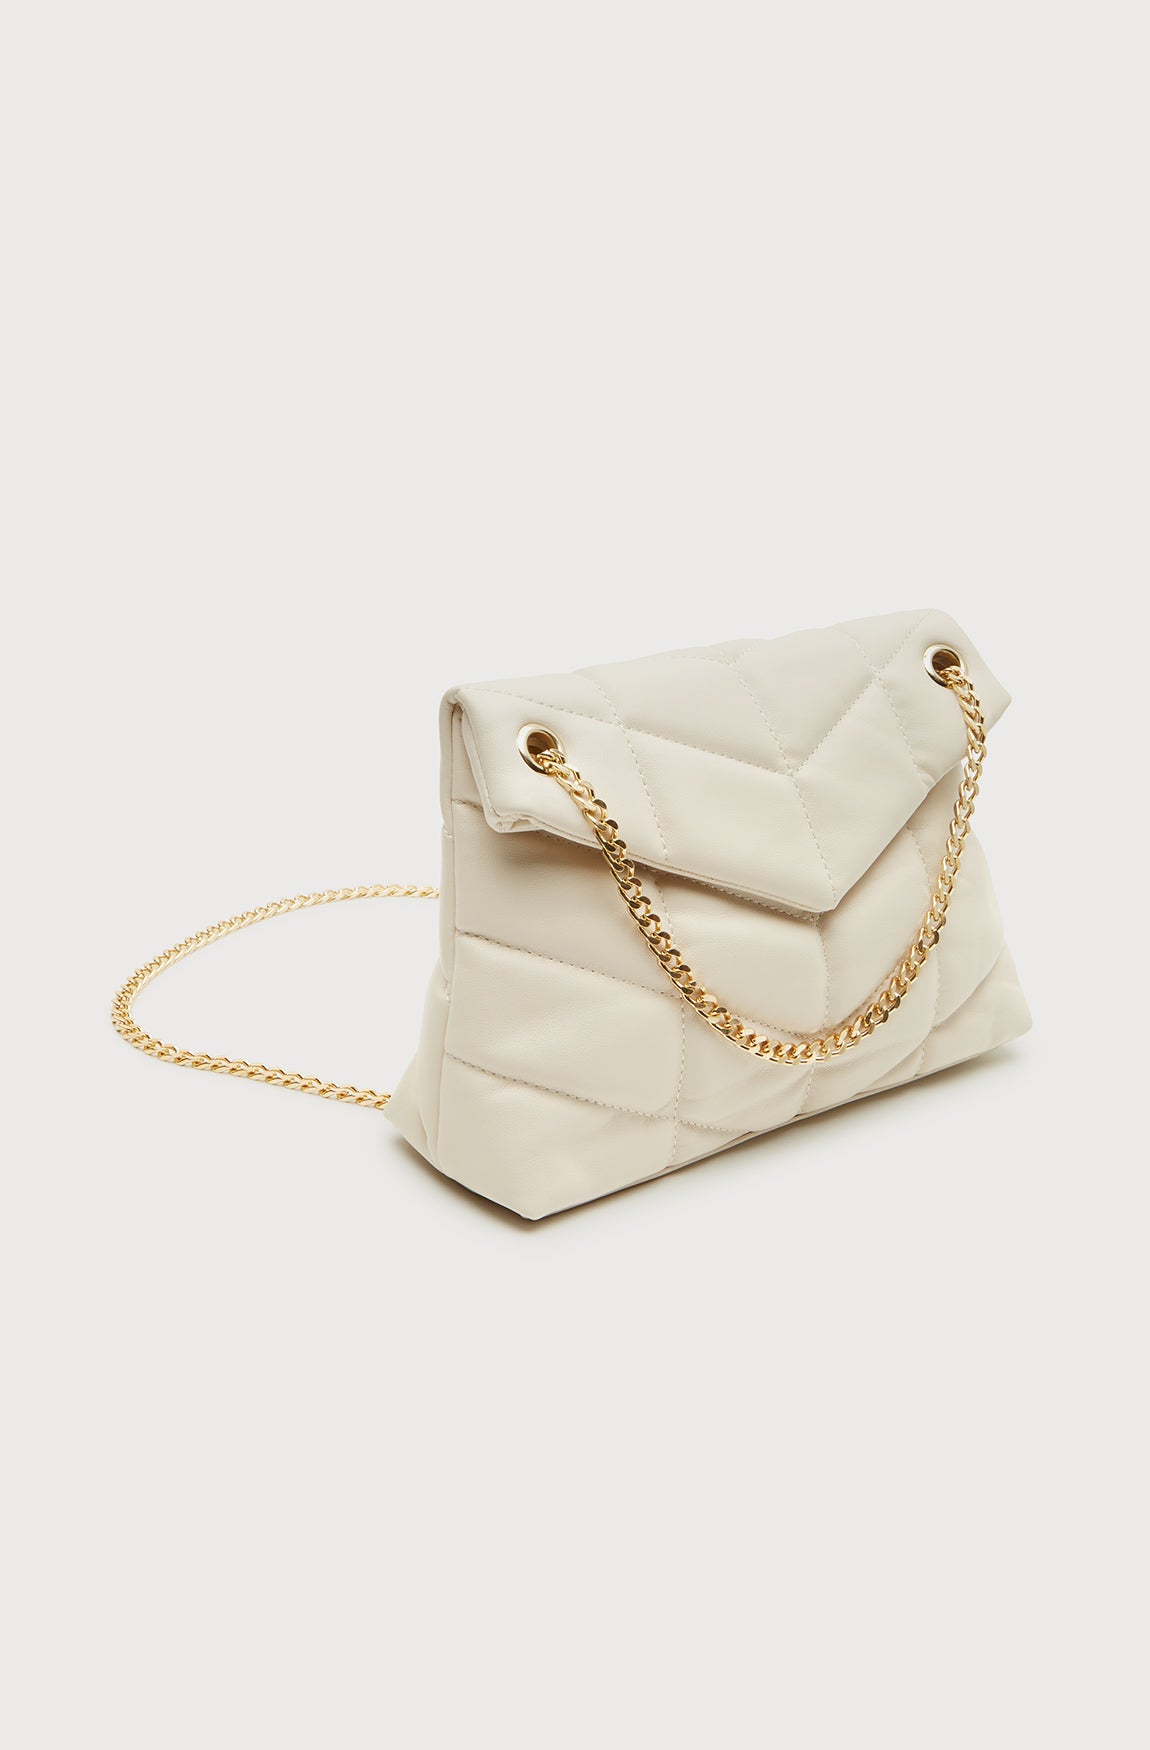 Women's Bags | Handbags, Clutch Bags & More | SHEIKE